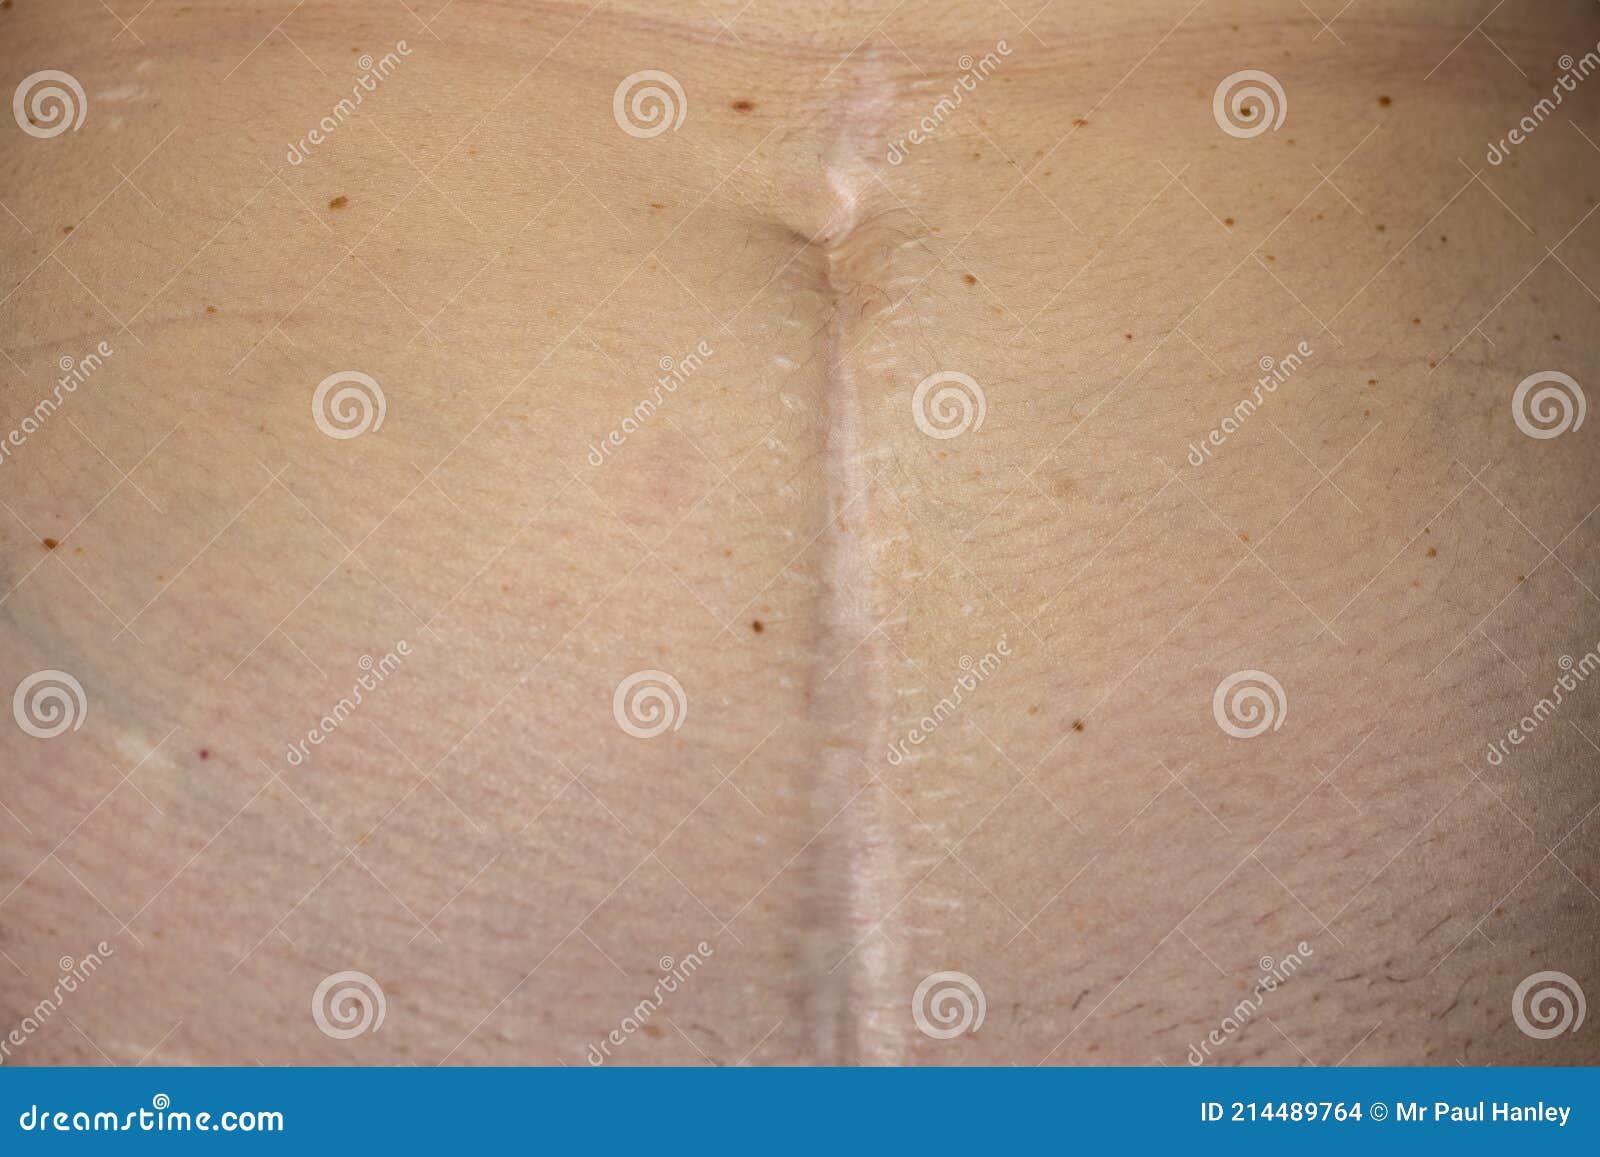 Cicatrice D'une Appendicectomie D'urgence Et D'une Chirurgie D ...